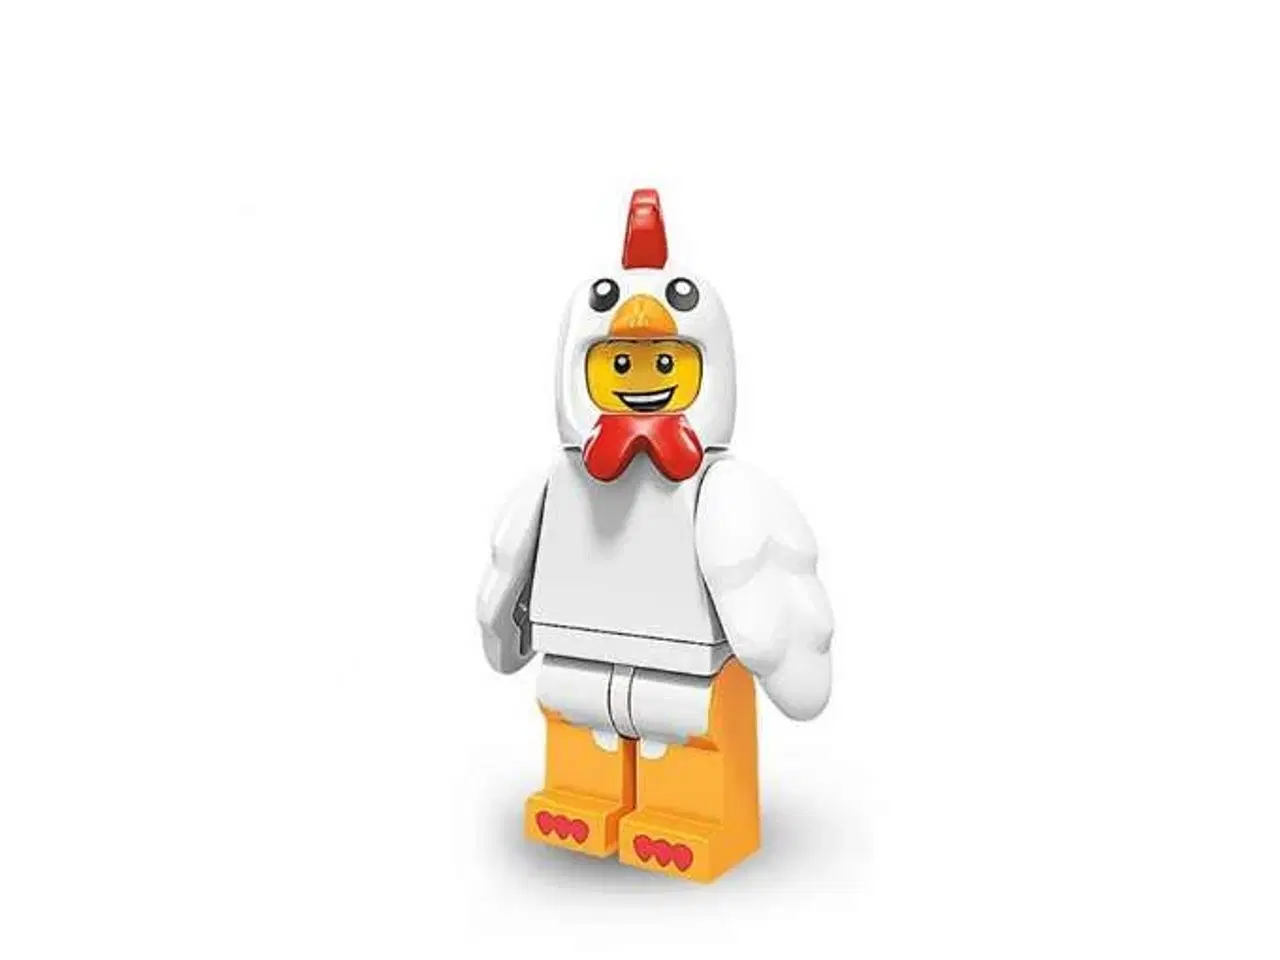 Billede 2 - Lego påske kylling minifigur - udgået 2016 - ny